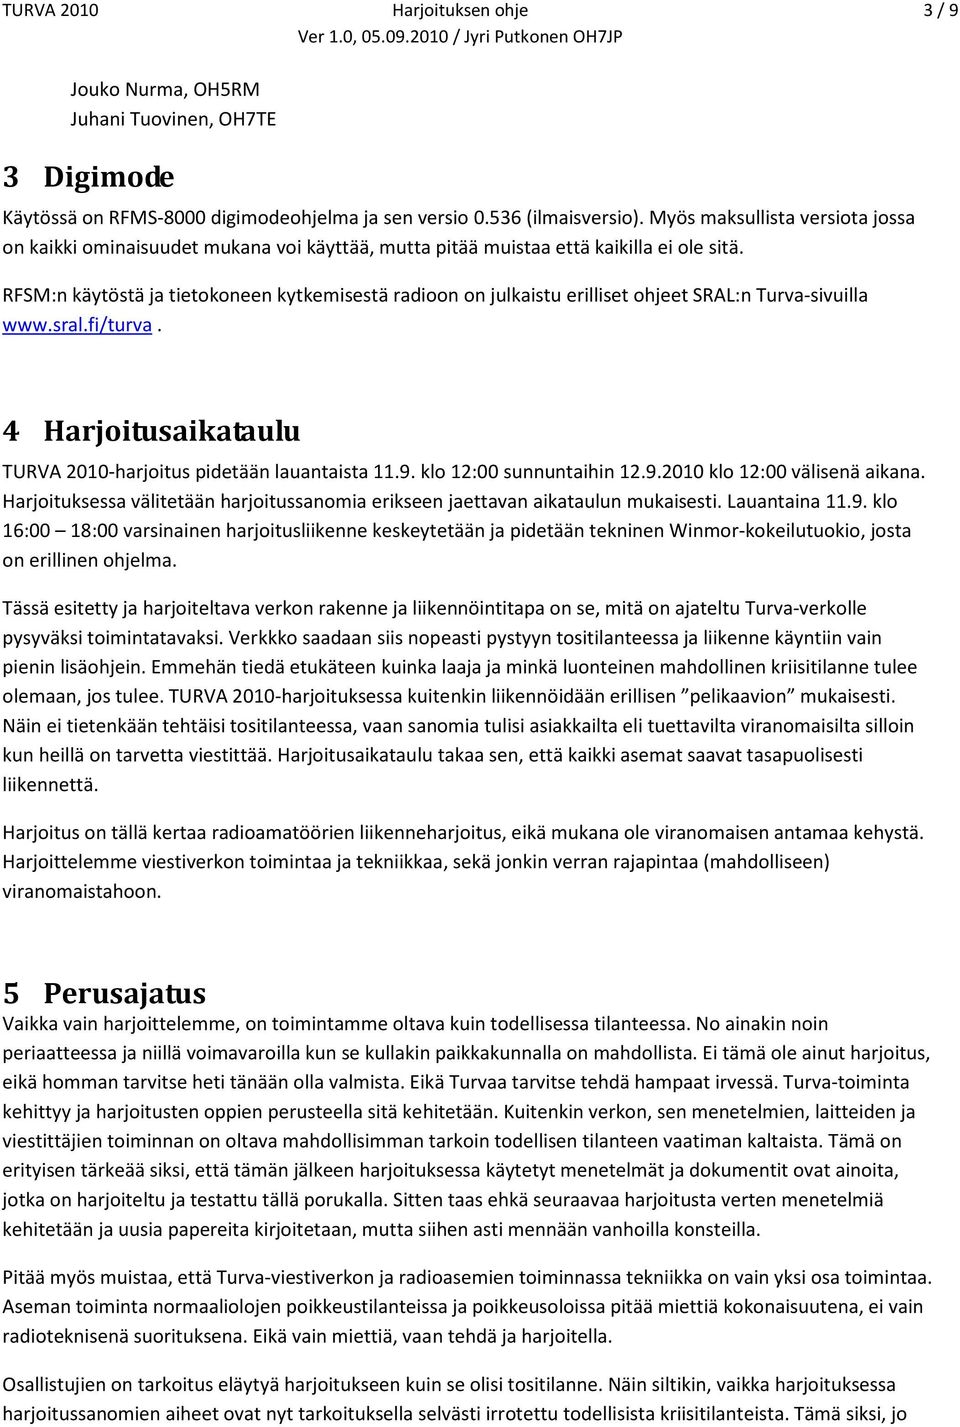 RFSM:n käytöstä ja tietokoneen kytkemisestä radioon on julkaistu erilliset ohjeet SRAL:n Turva-sivuilla www.sral.fi/turva. 4 Harjoitusaikataulu TURVA 2010-harjoitus pidetään lauantaista 11.9.